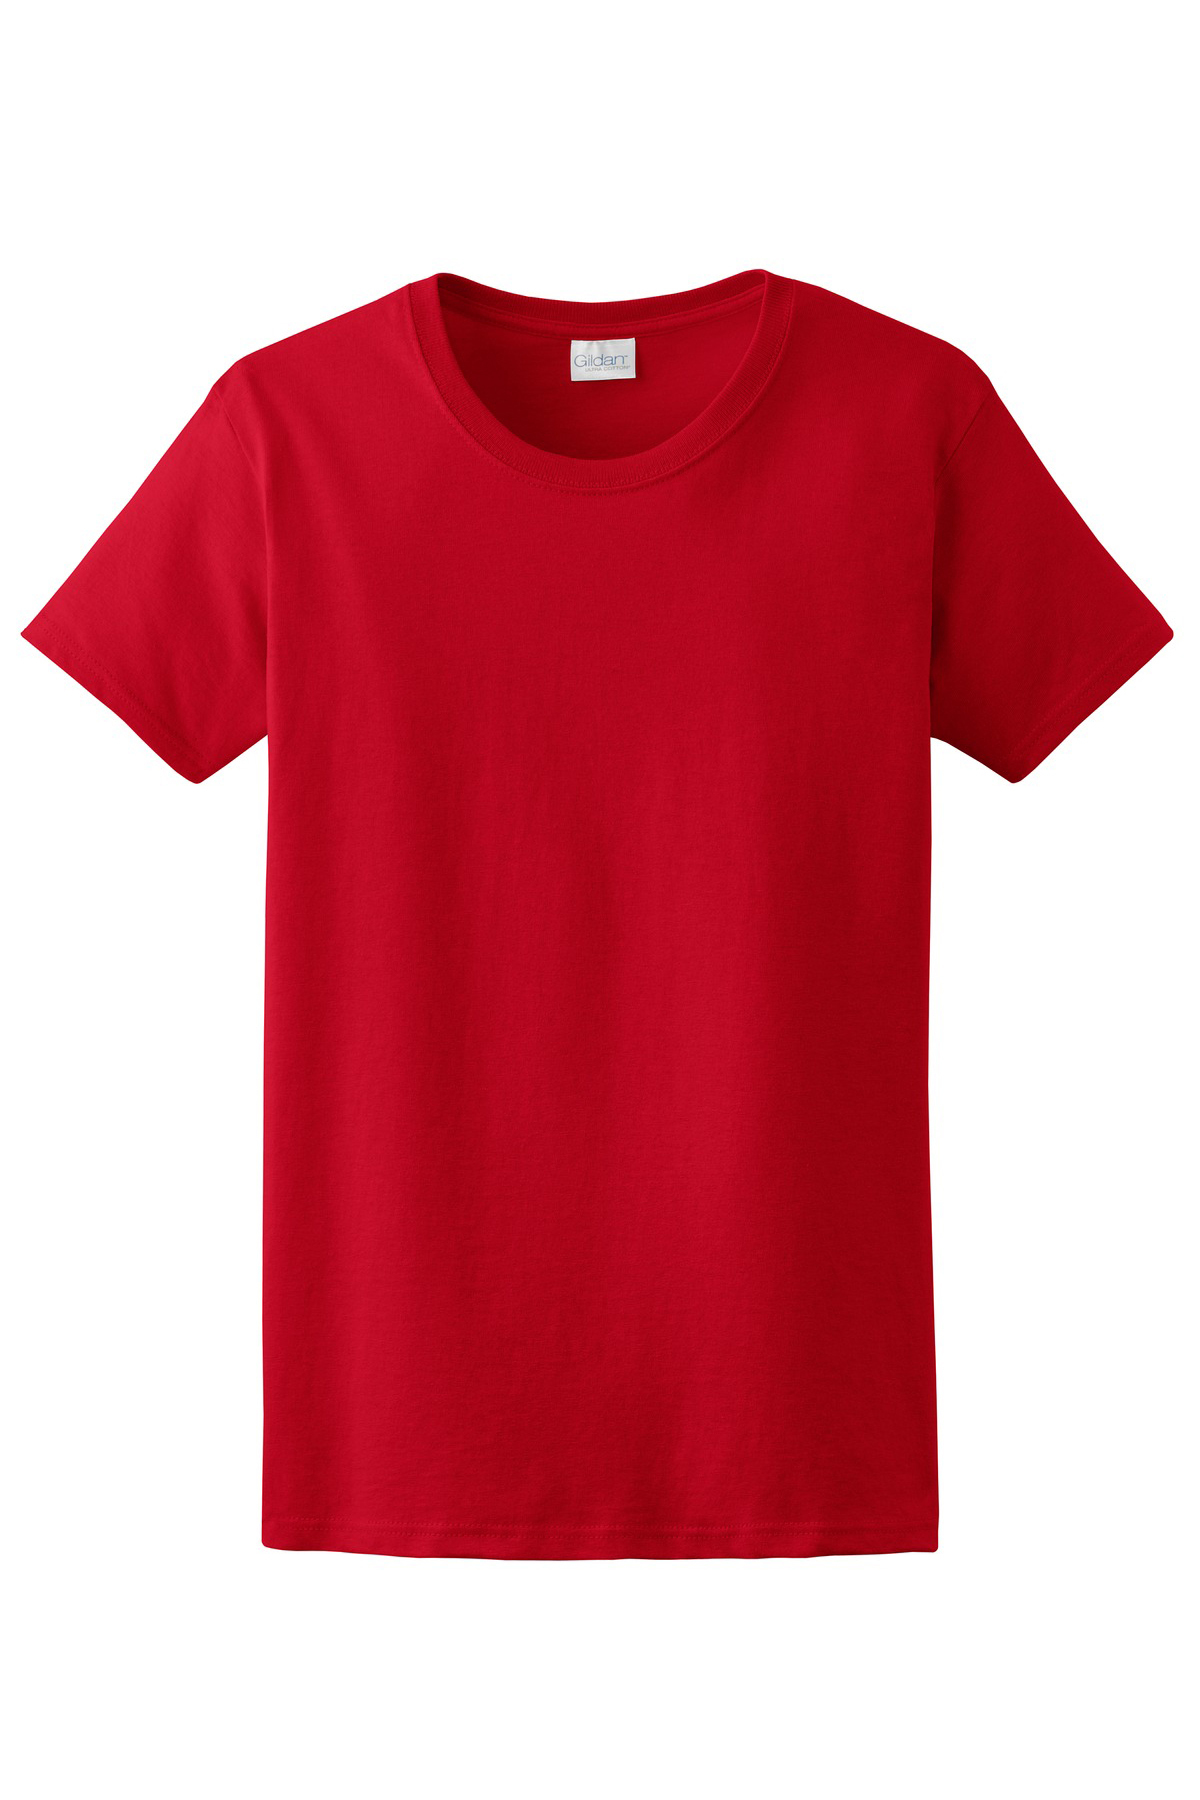 GildanÂ® - Ladies Ultra CottonÂ® 100% Cotton T-Shirt | 6-6.1 100% Cotton | T-Shirts | Company Casuals